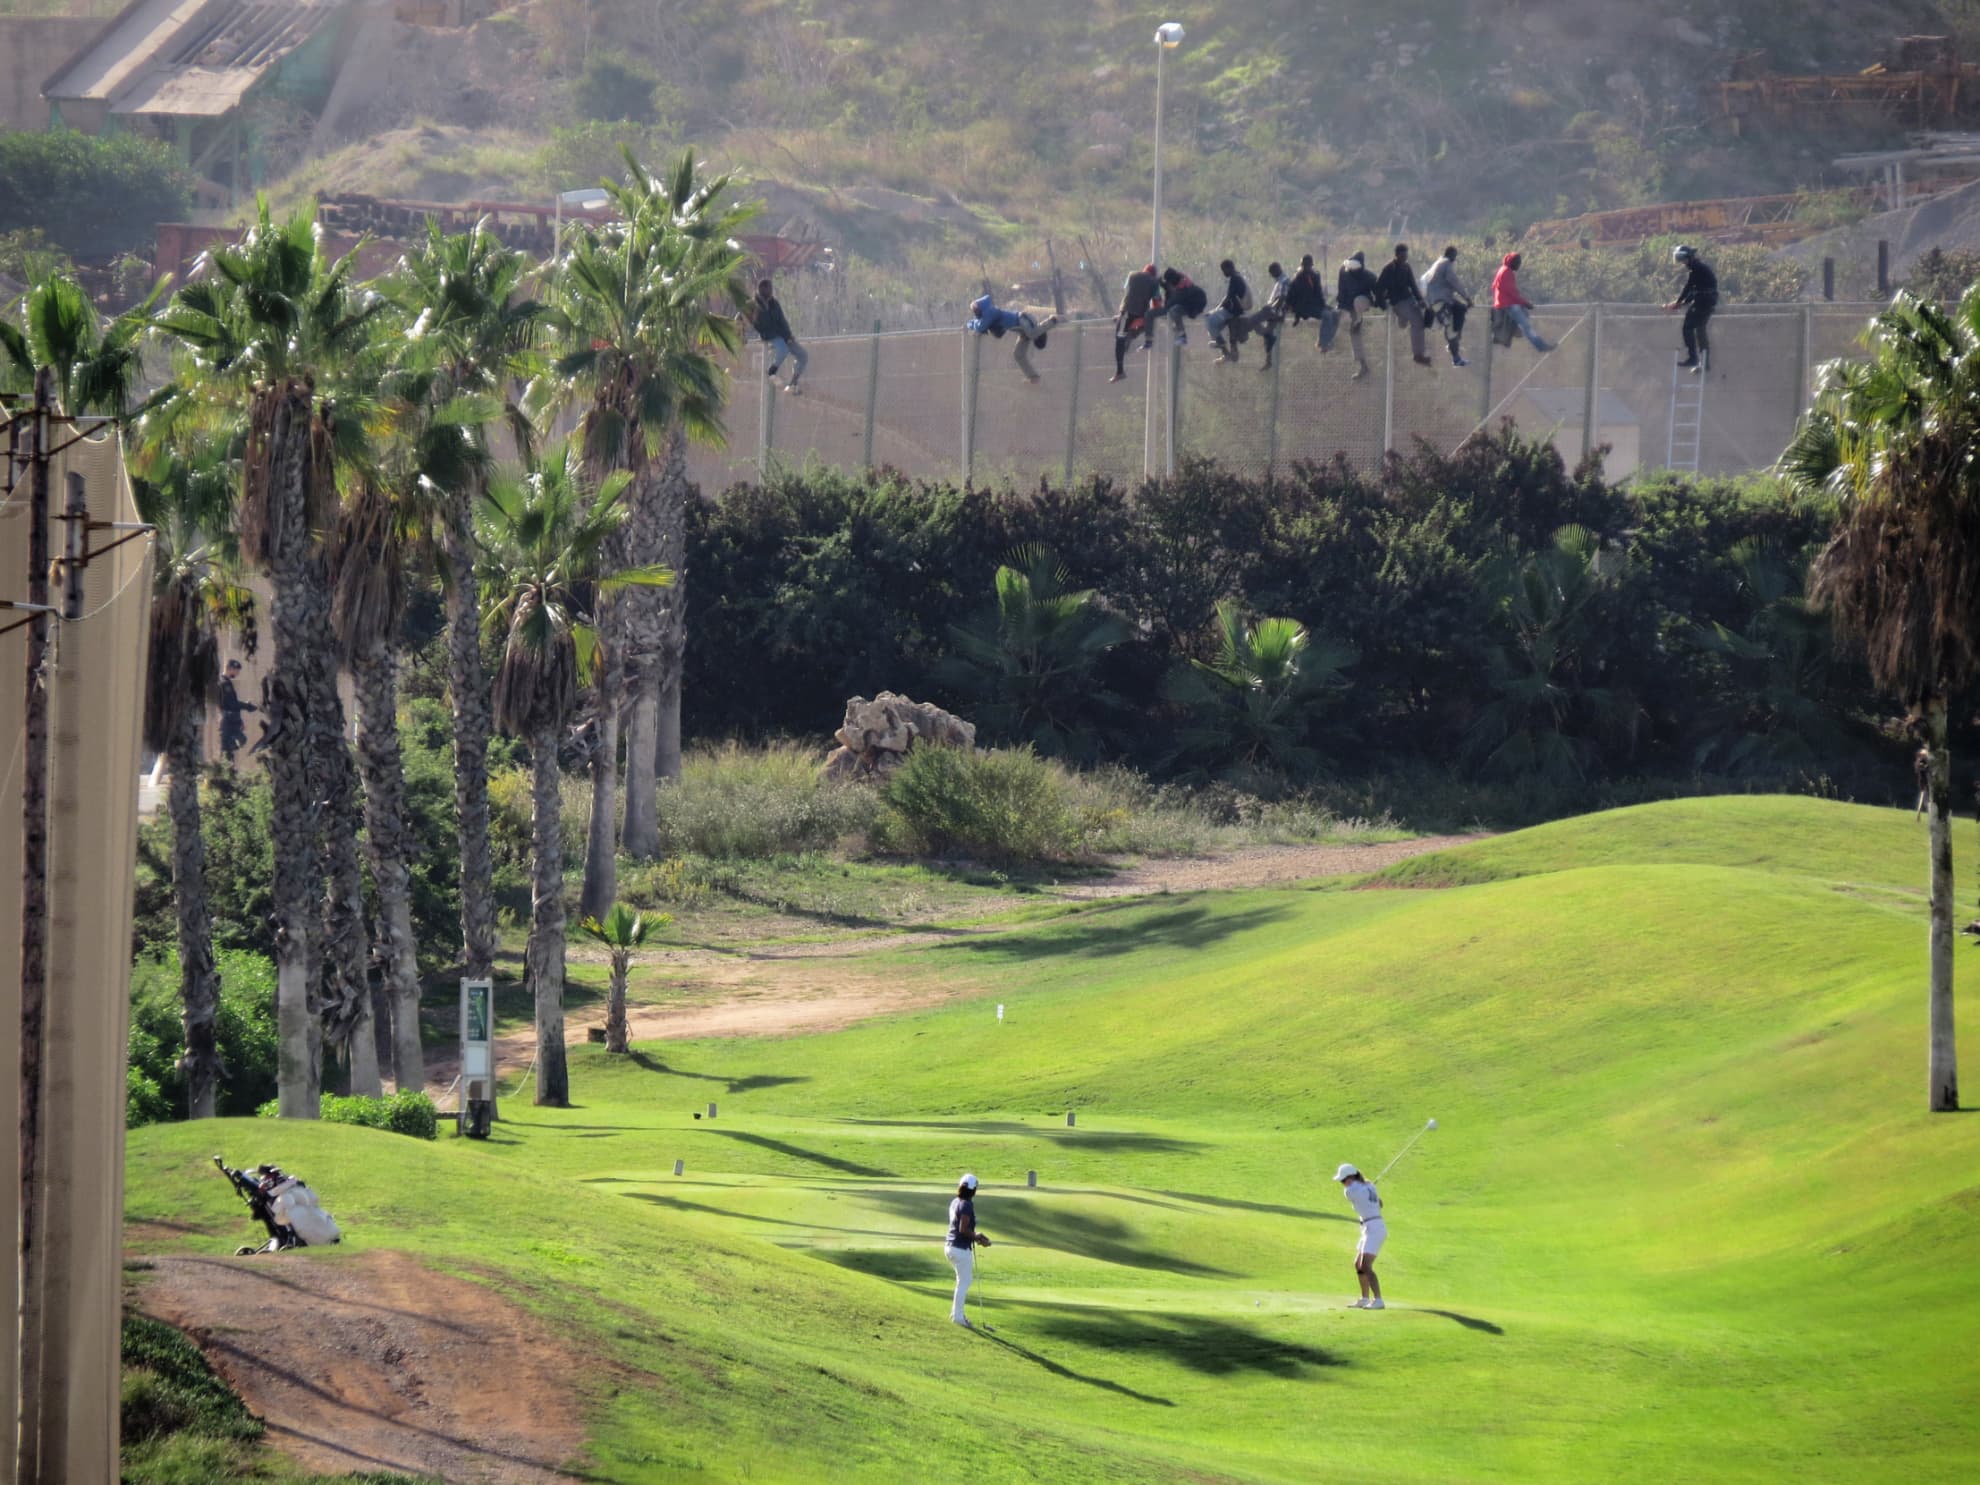 Un grupo de migrantes encaramados a la valla de Melilla, frente al campo de golf, en octubre de 2014.